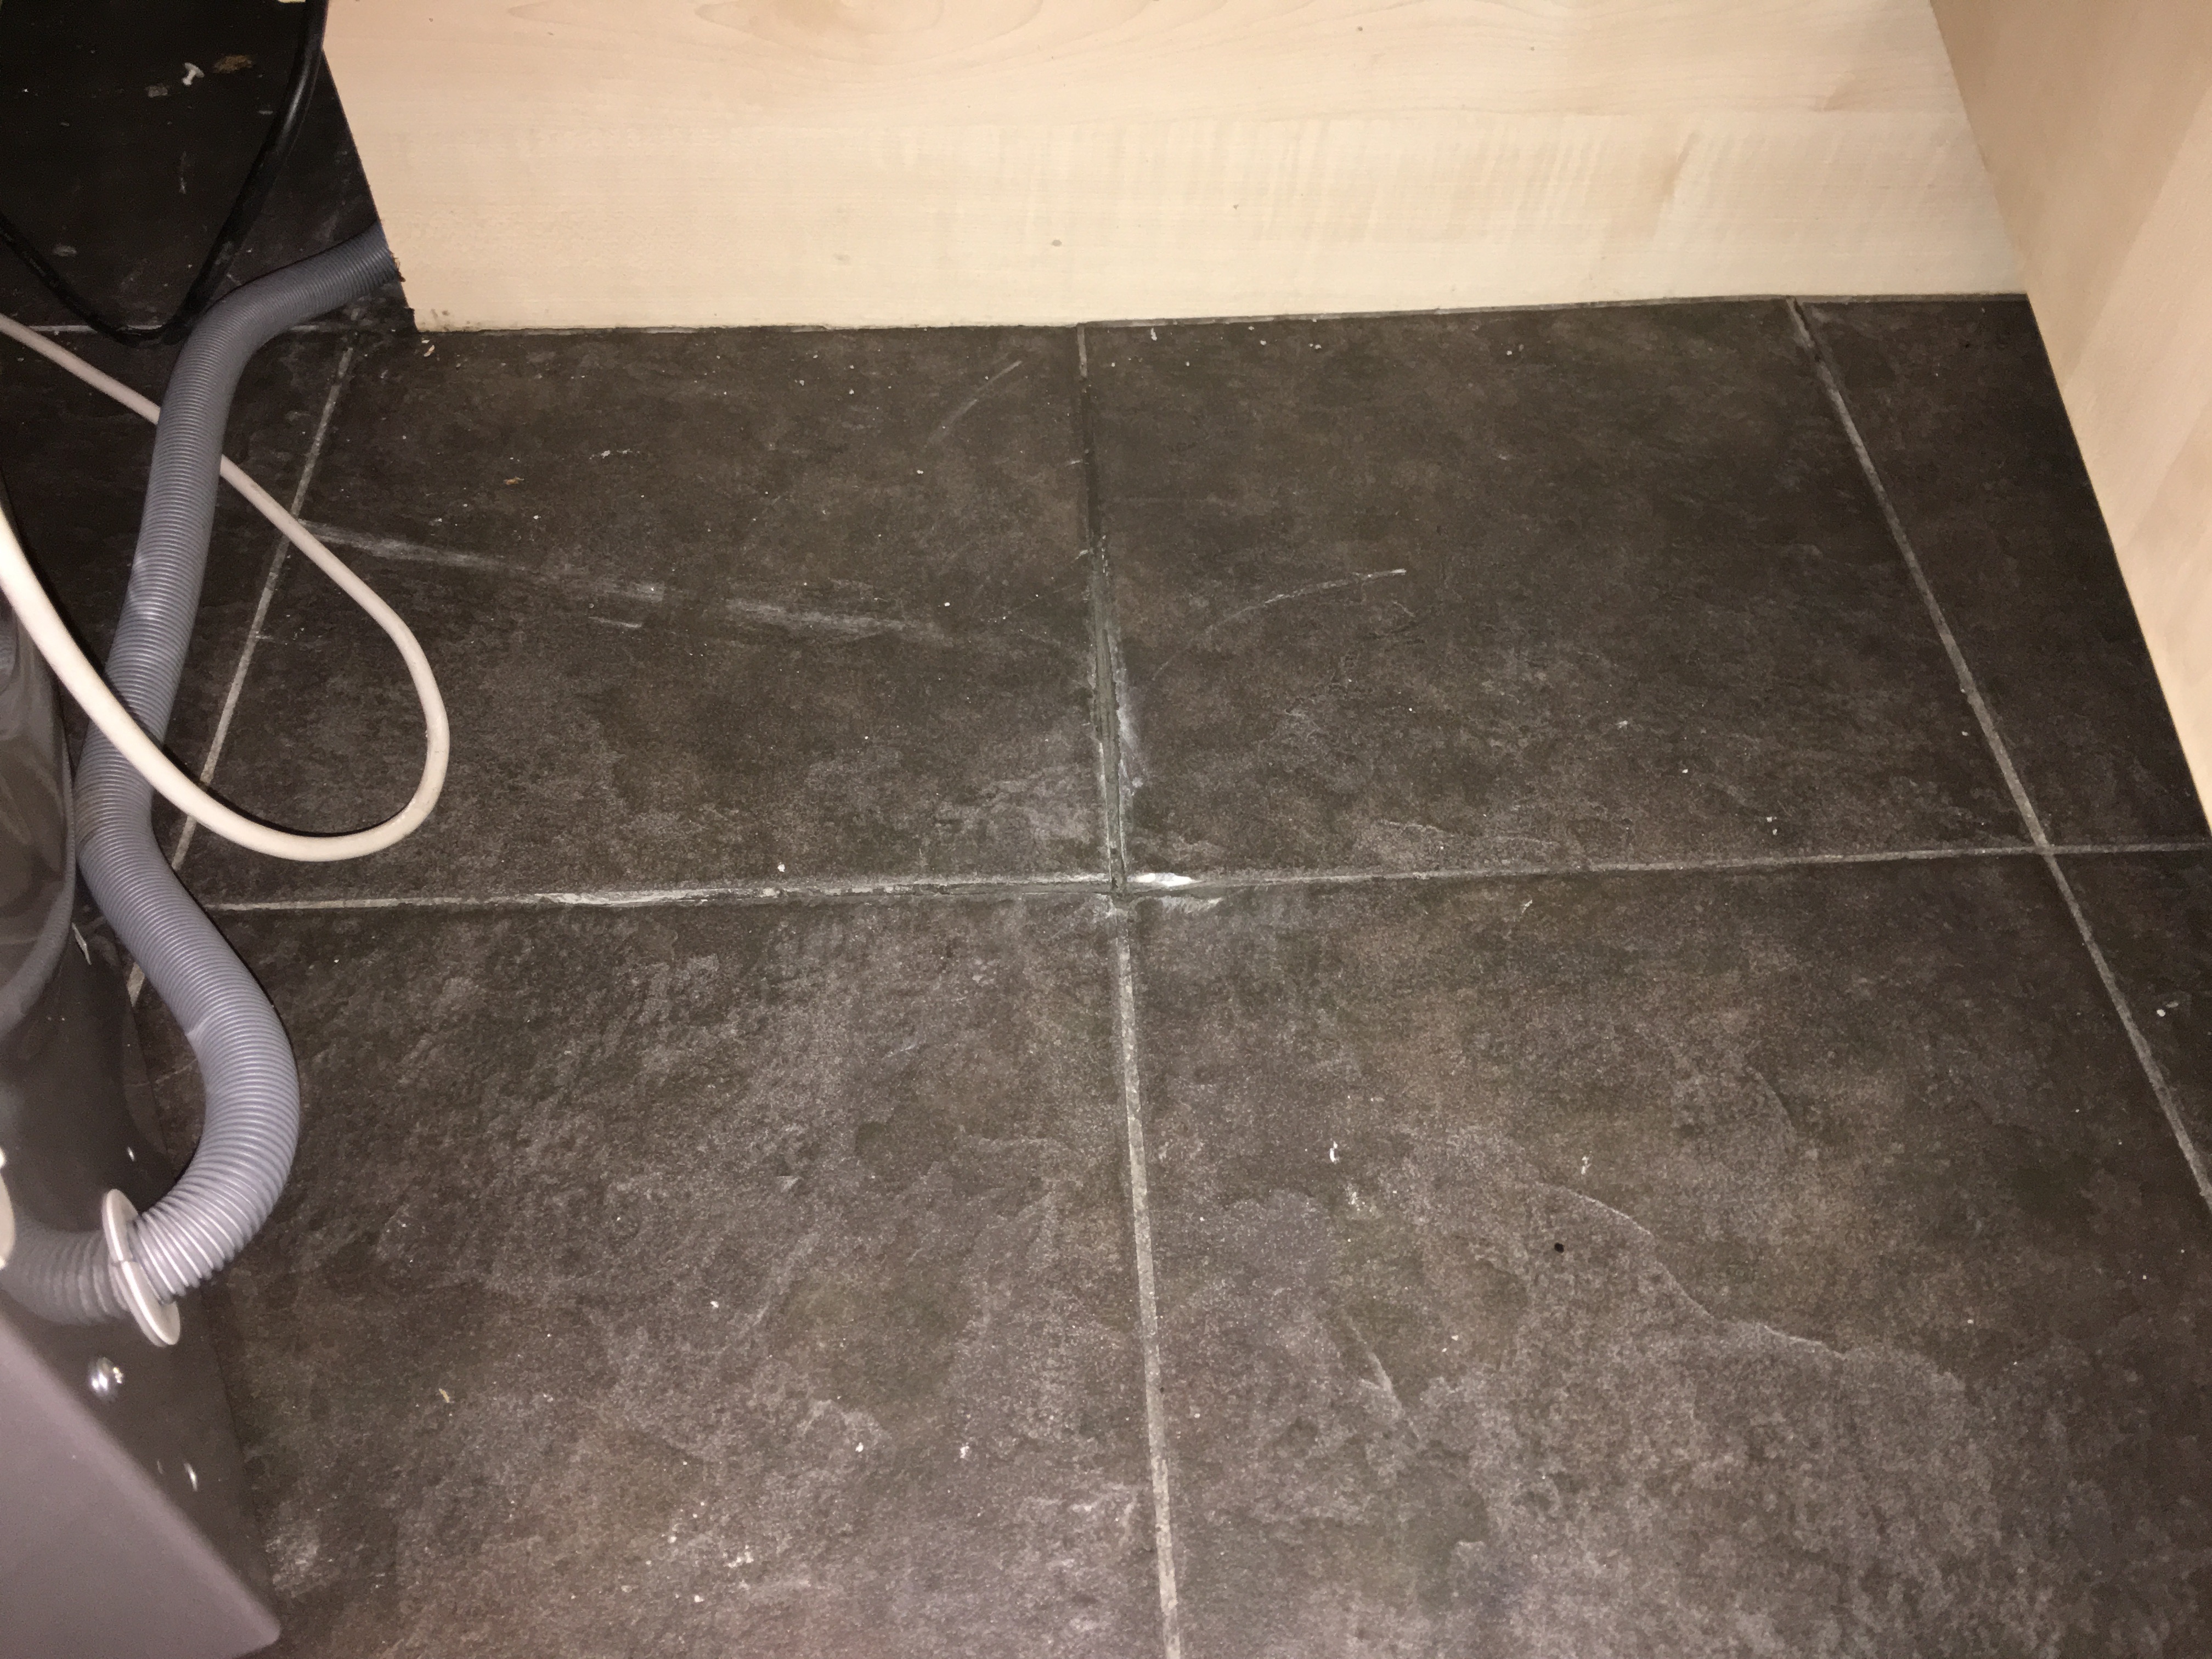 Got Water Under Kitchen Floor Tiles, Water Leaking Through Floor Tiles